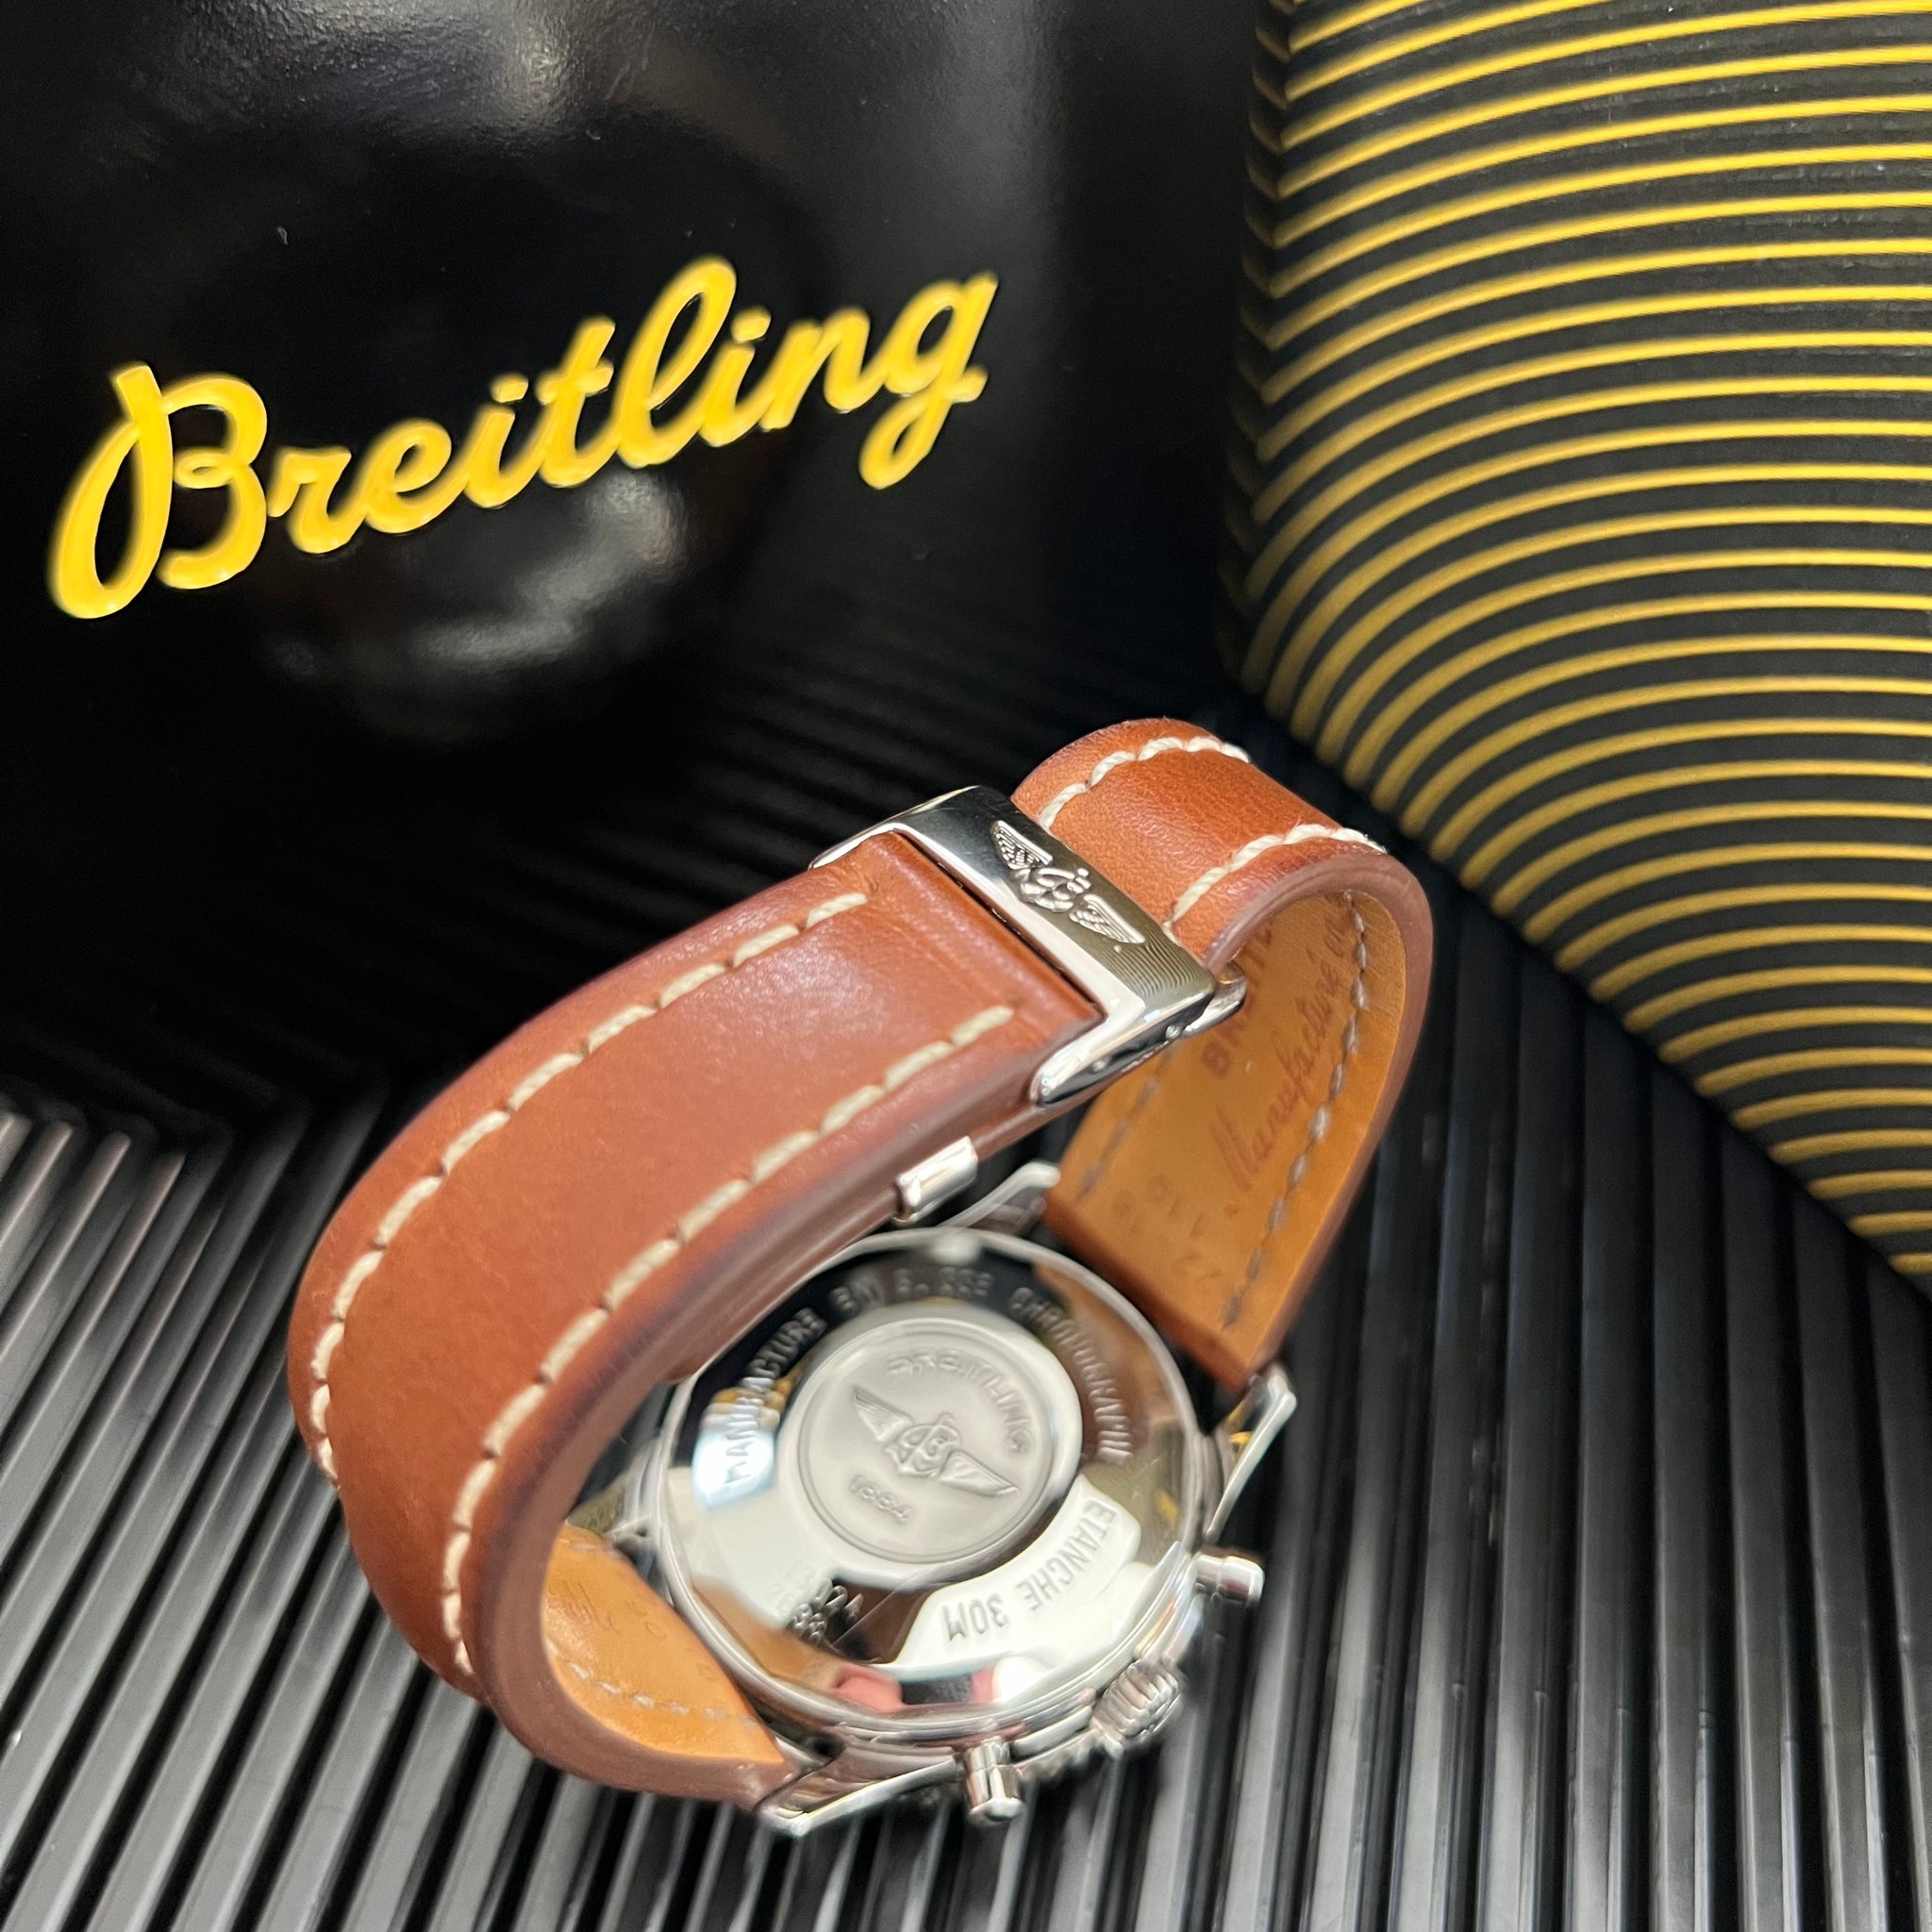 Breitling Aviastar-